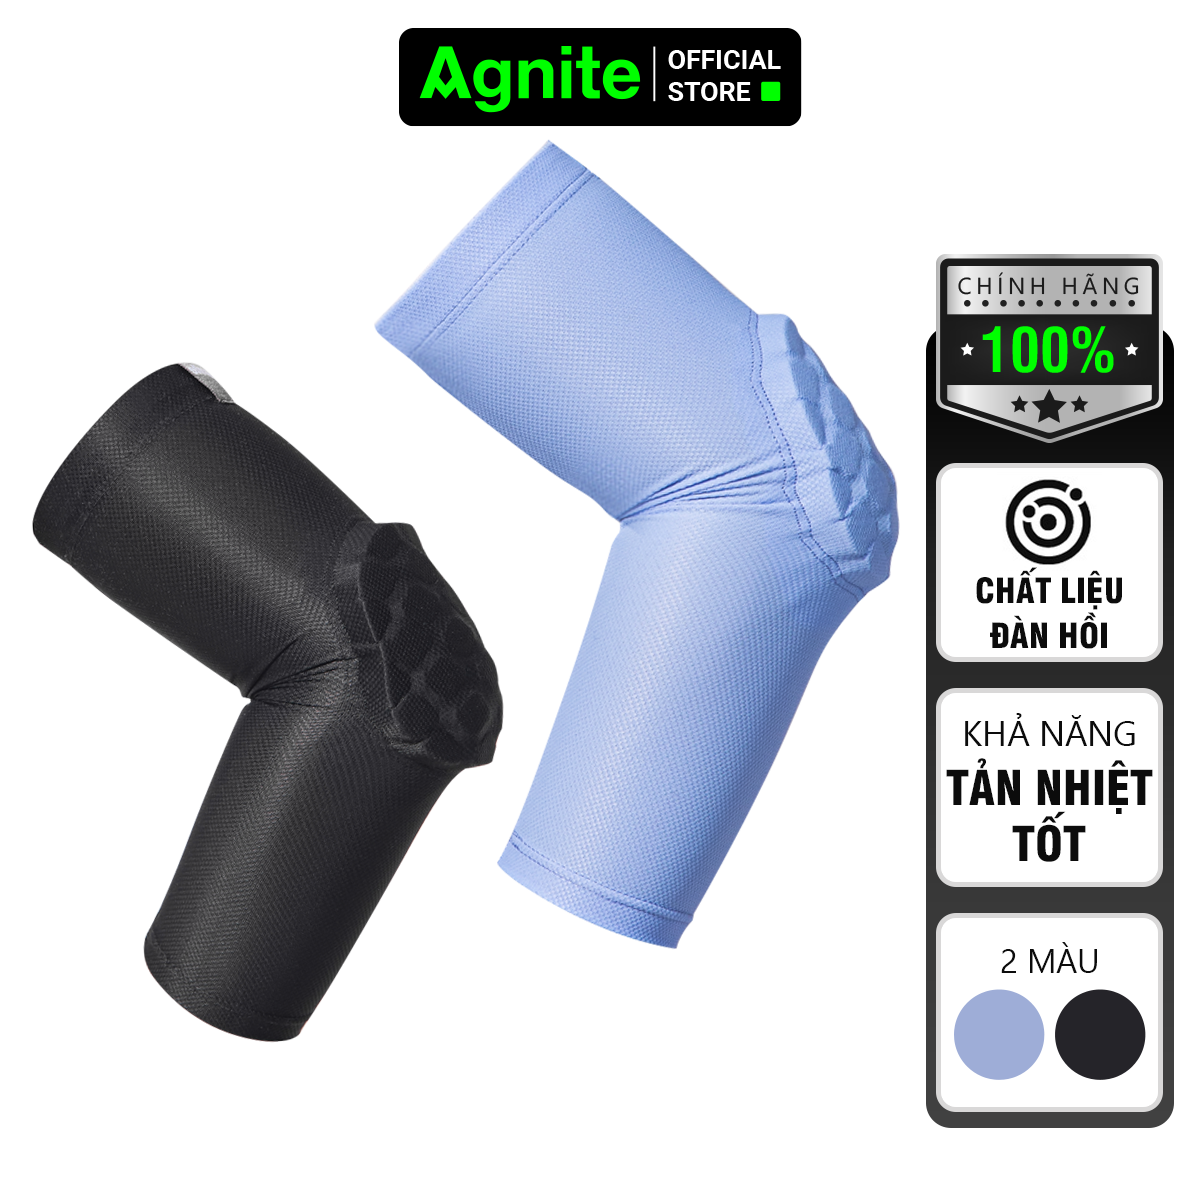 Đệm khuỷu tay AGNITE chính hãng, giúp bảo vệ khuỷu tay tập luyện thể thao, tránh chấn thương - mã FL103